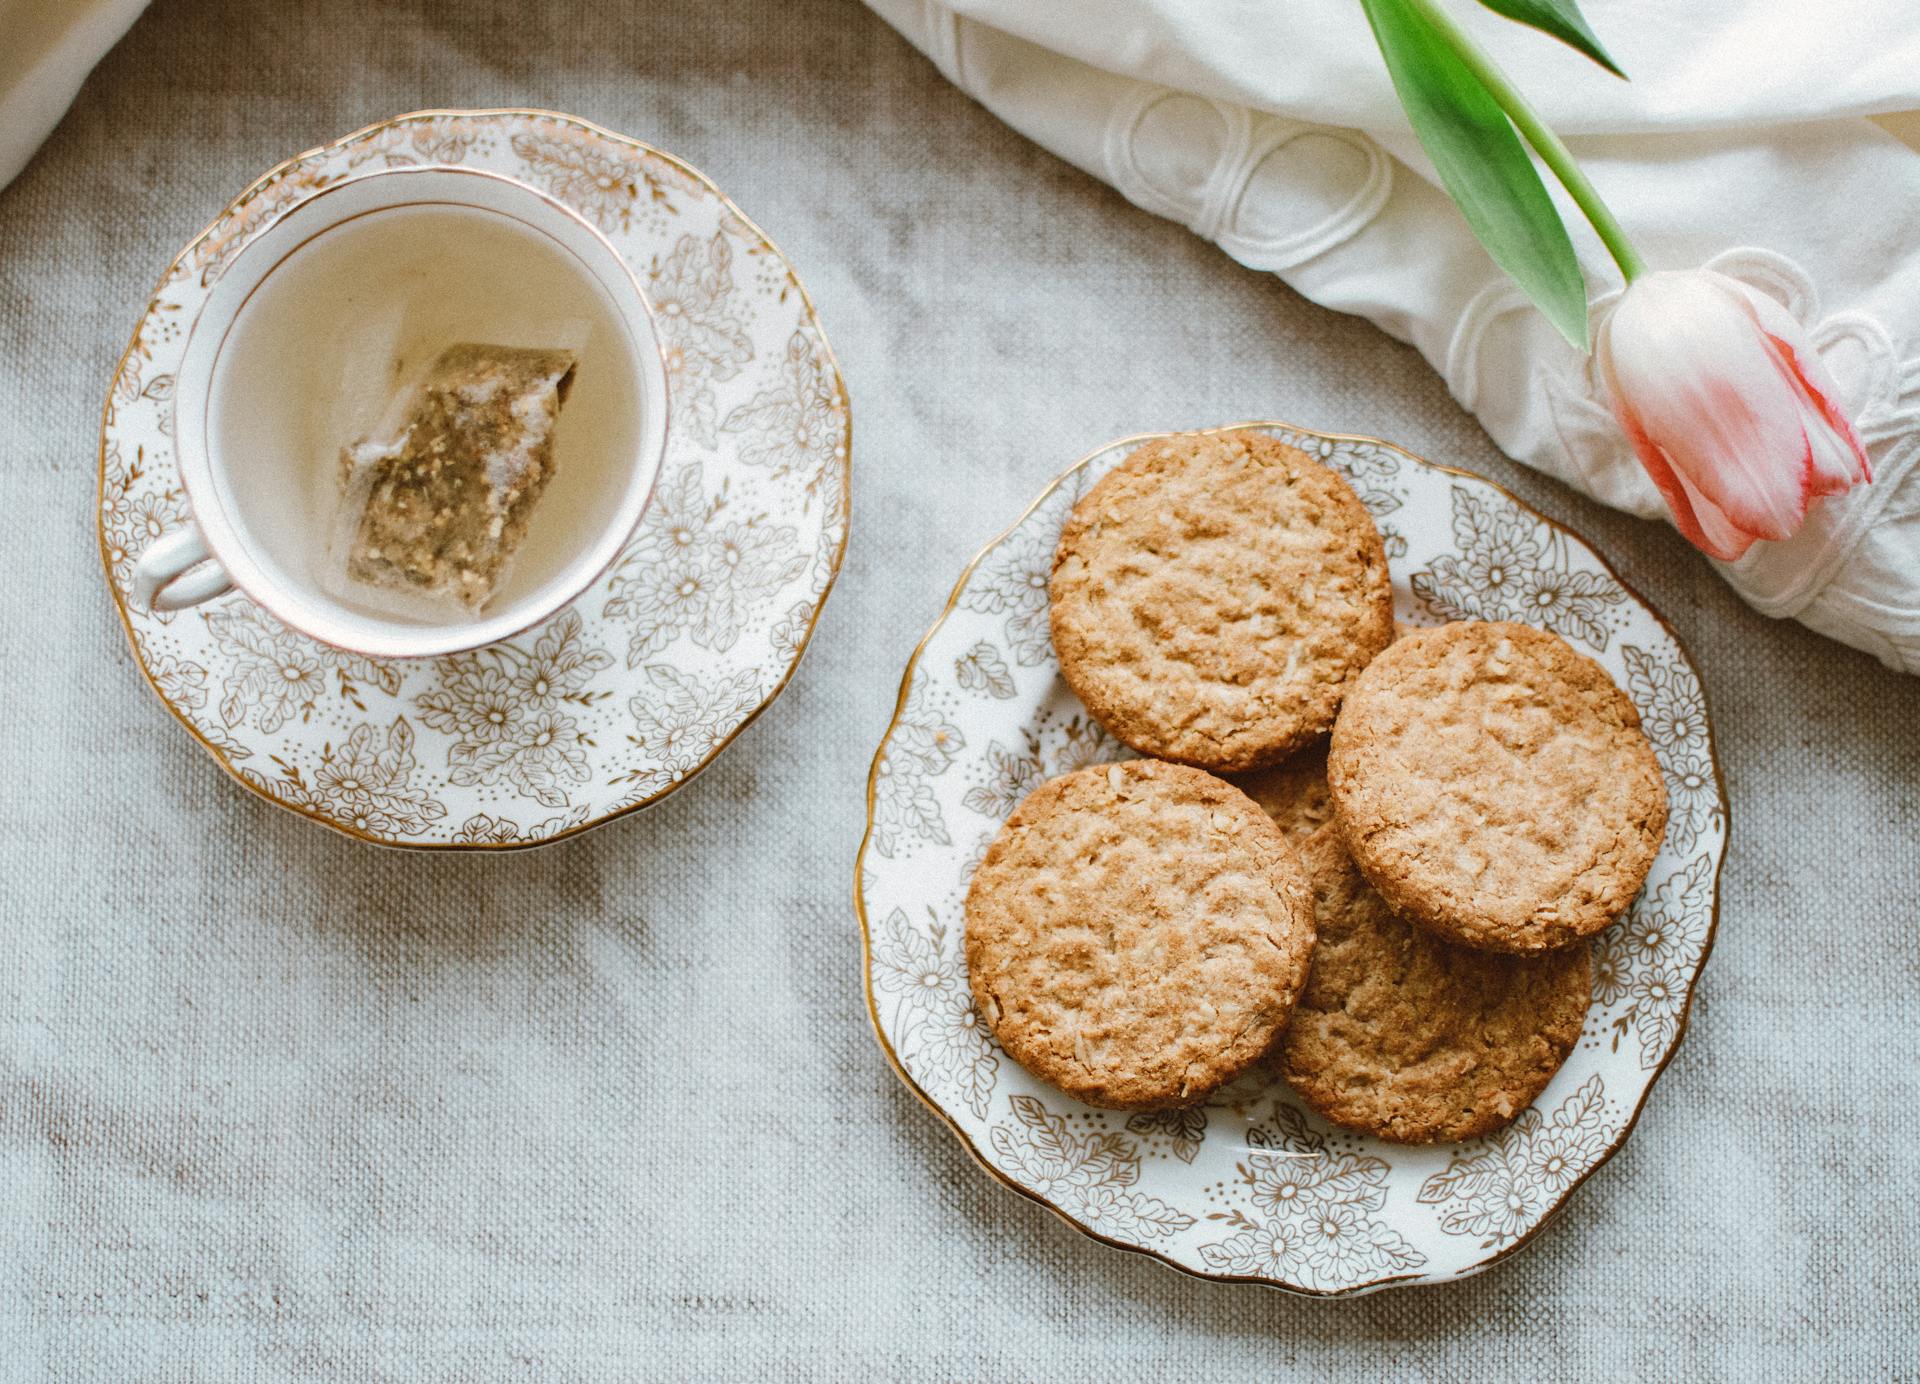 Tea and cookies | Source: Pexels